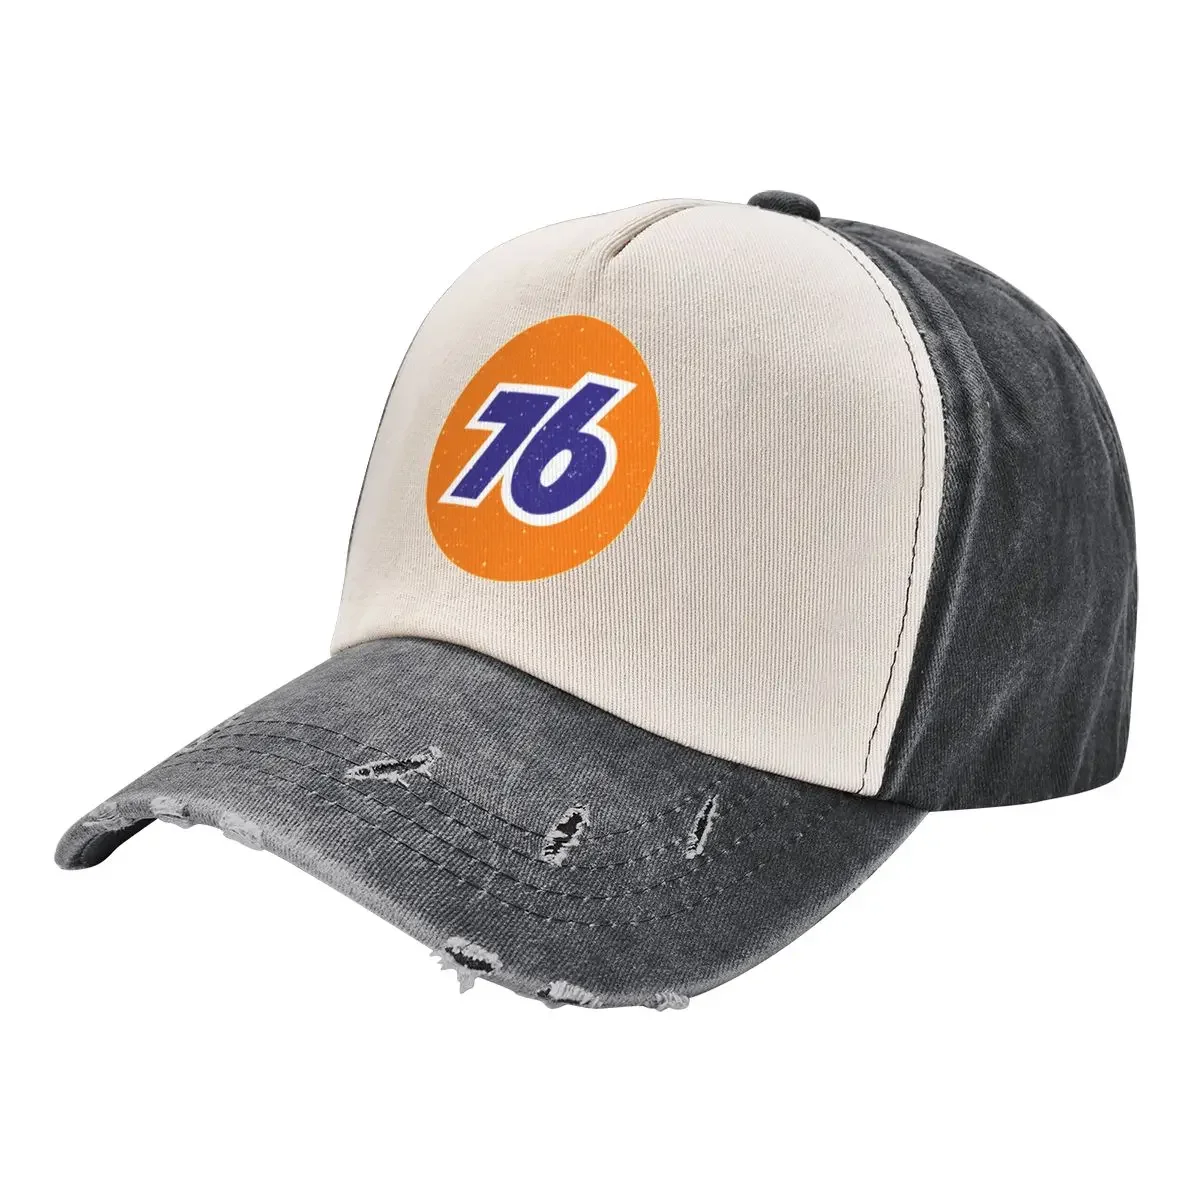 

Union 76 Retro Baseball Cap Luxury Cap tea Hat Hat Beach Beach Bag Men's Caps Women's